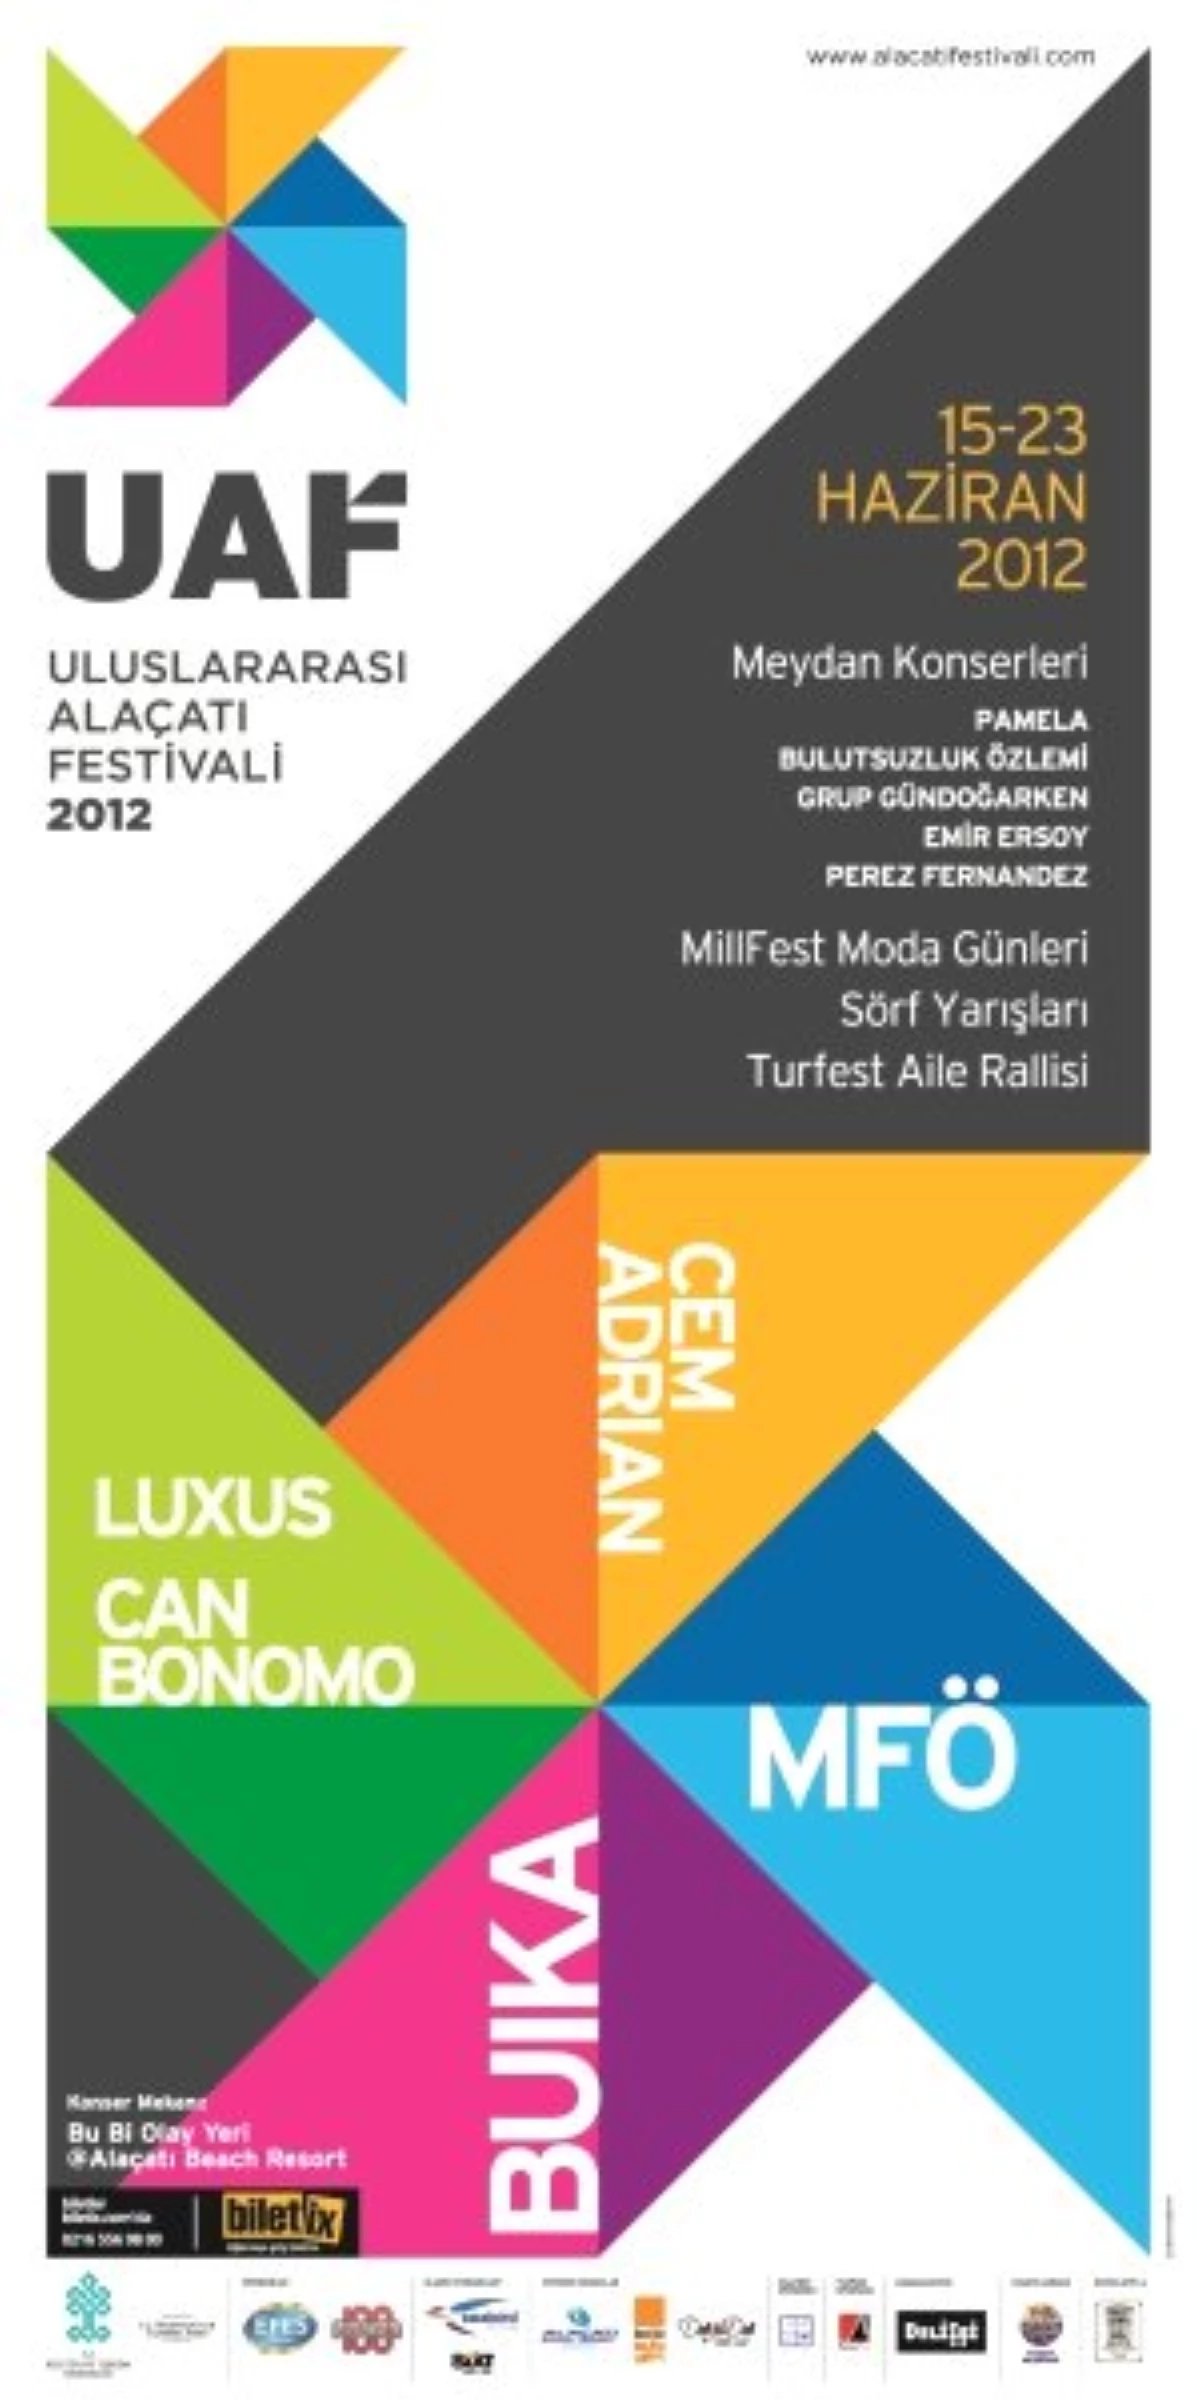 "Uluslararası Alaçatı Festivali 2012" MFÖ İle Sona Eriyor!
